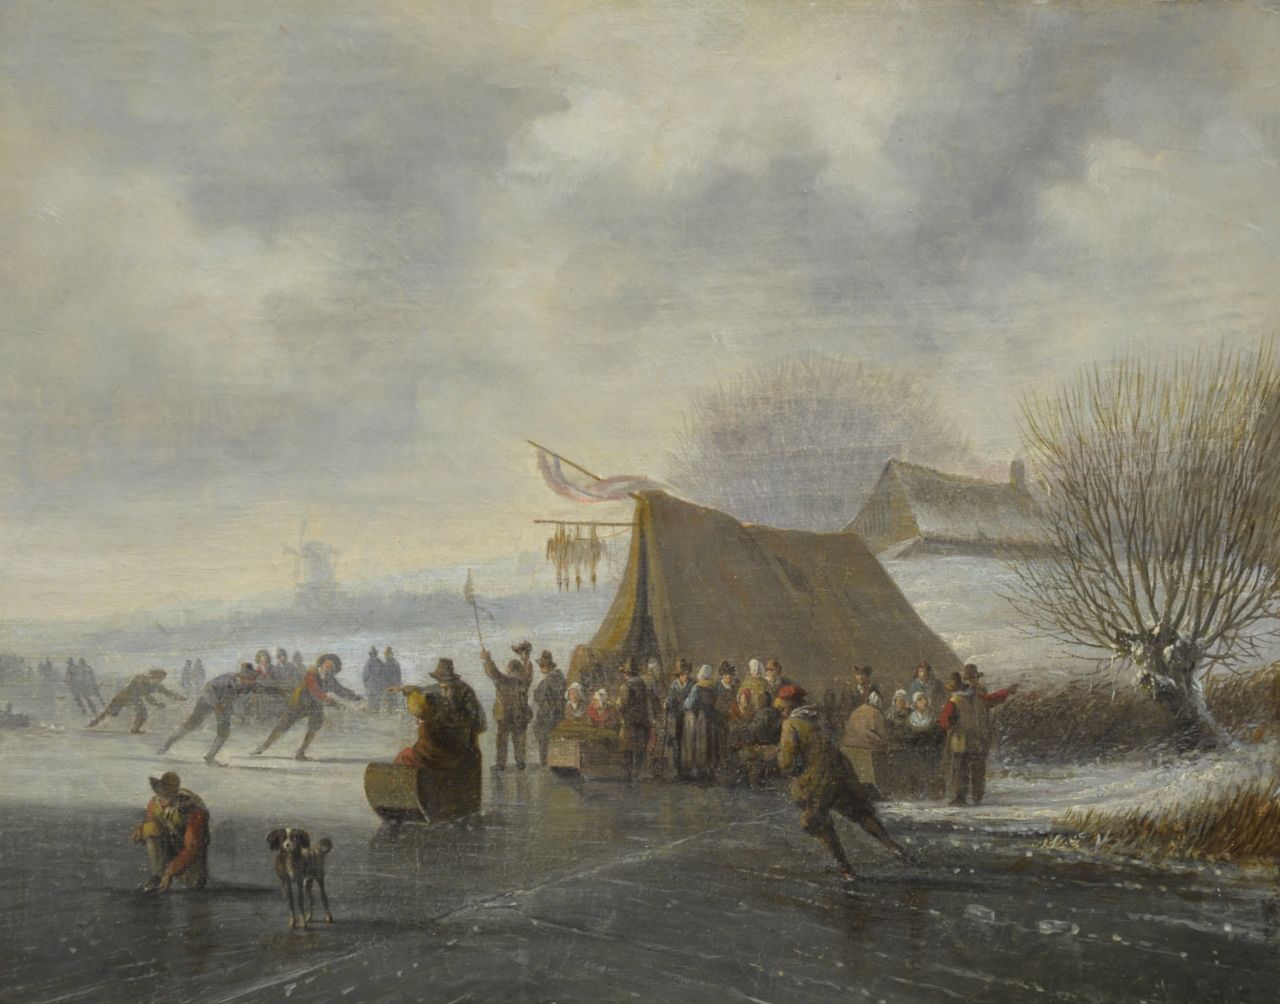 Stok J. van der | Jacobus van der Stok, Skating fun, Öl auf Leinwand 27,0 x 34,0 cm, signed l.r.